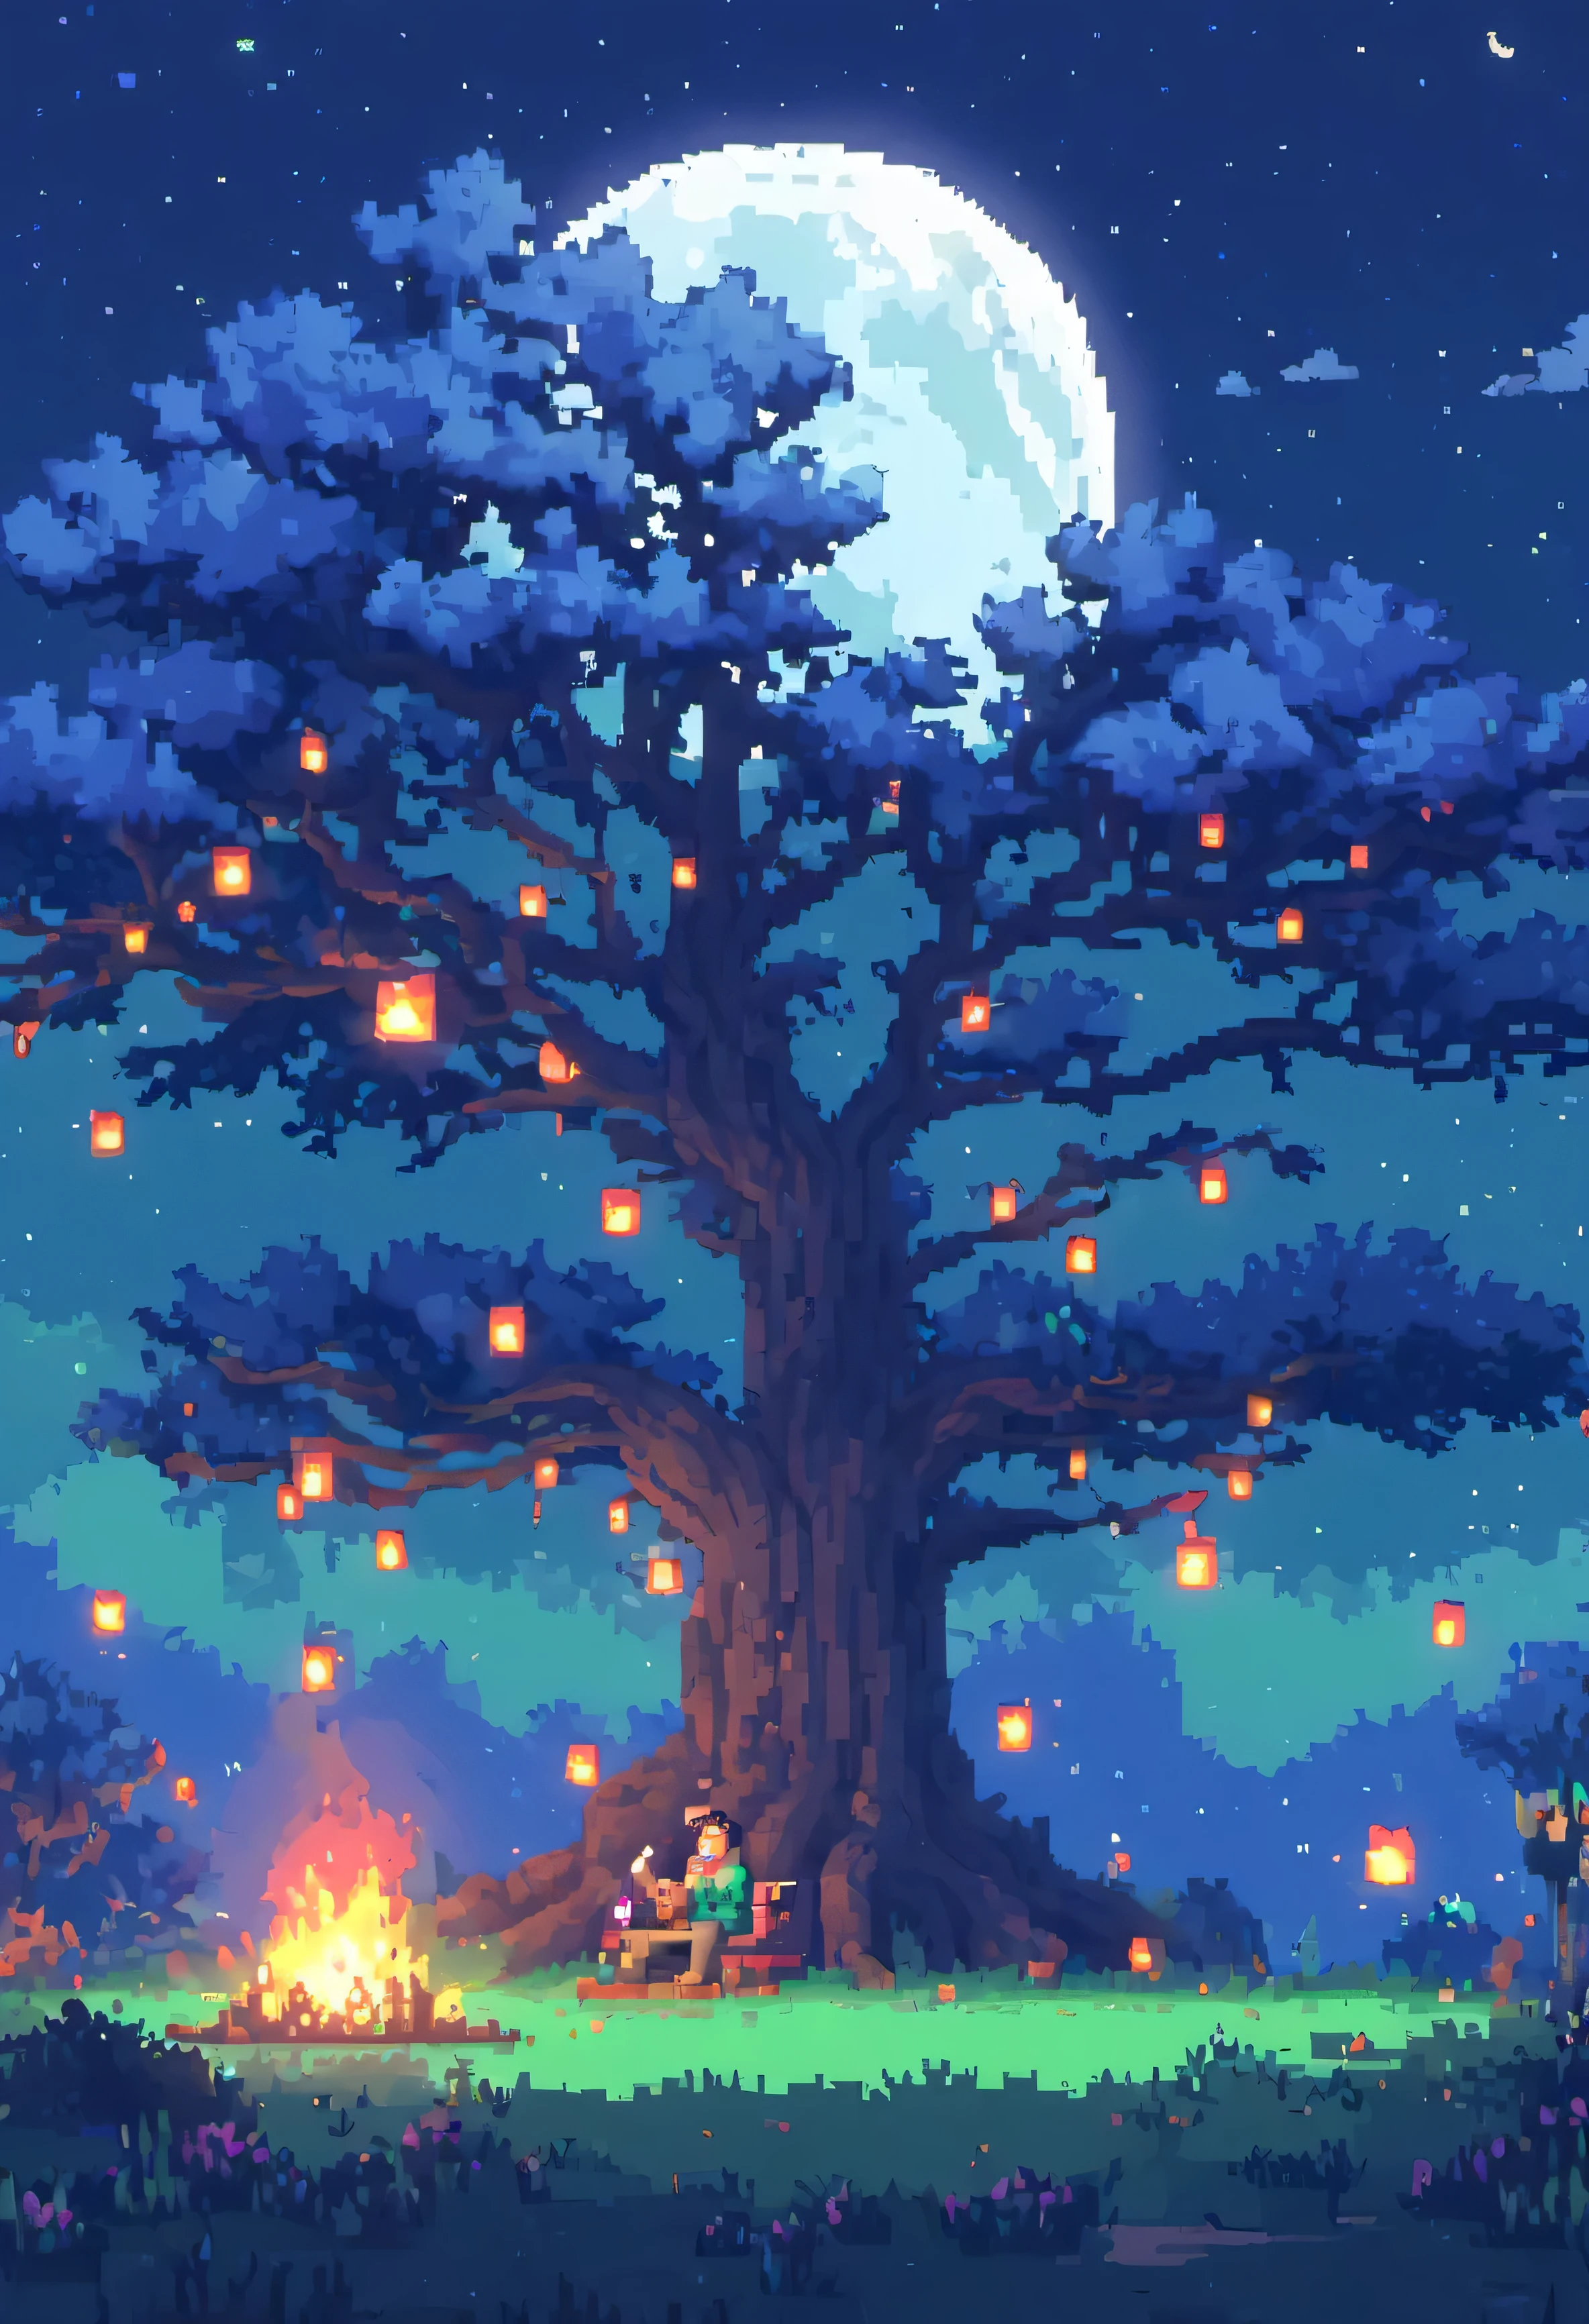 ピクセルゲーム, 背景に緑の芝生, 月が輝く夜です, 火を灯した木の上に座っている男